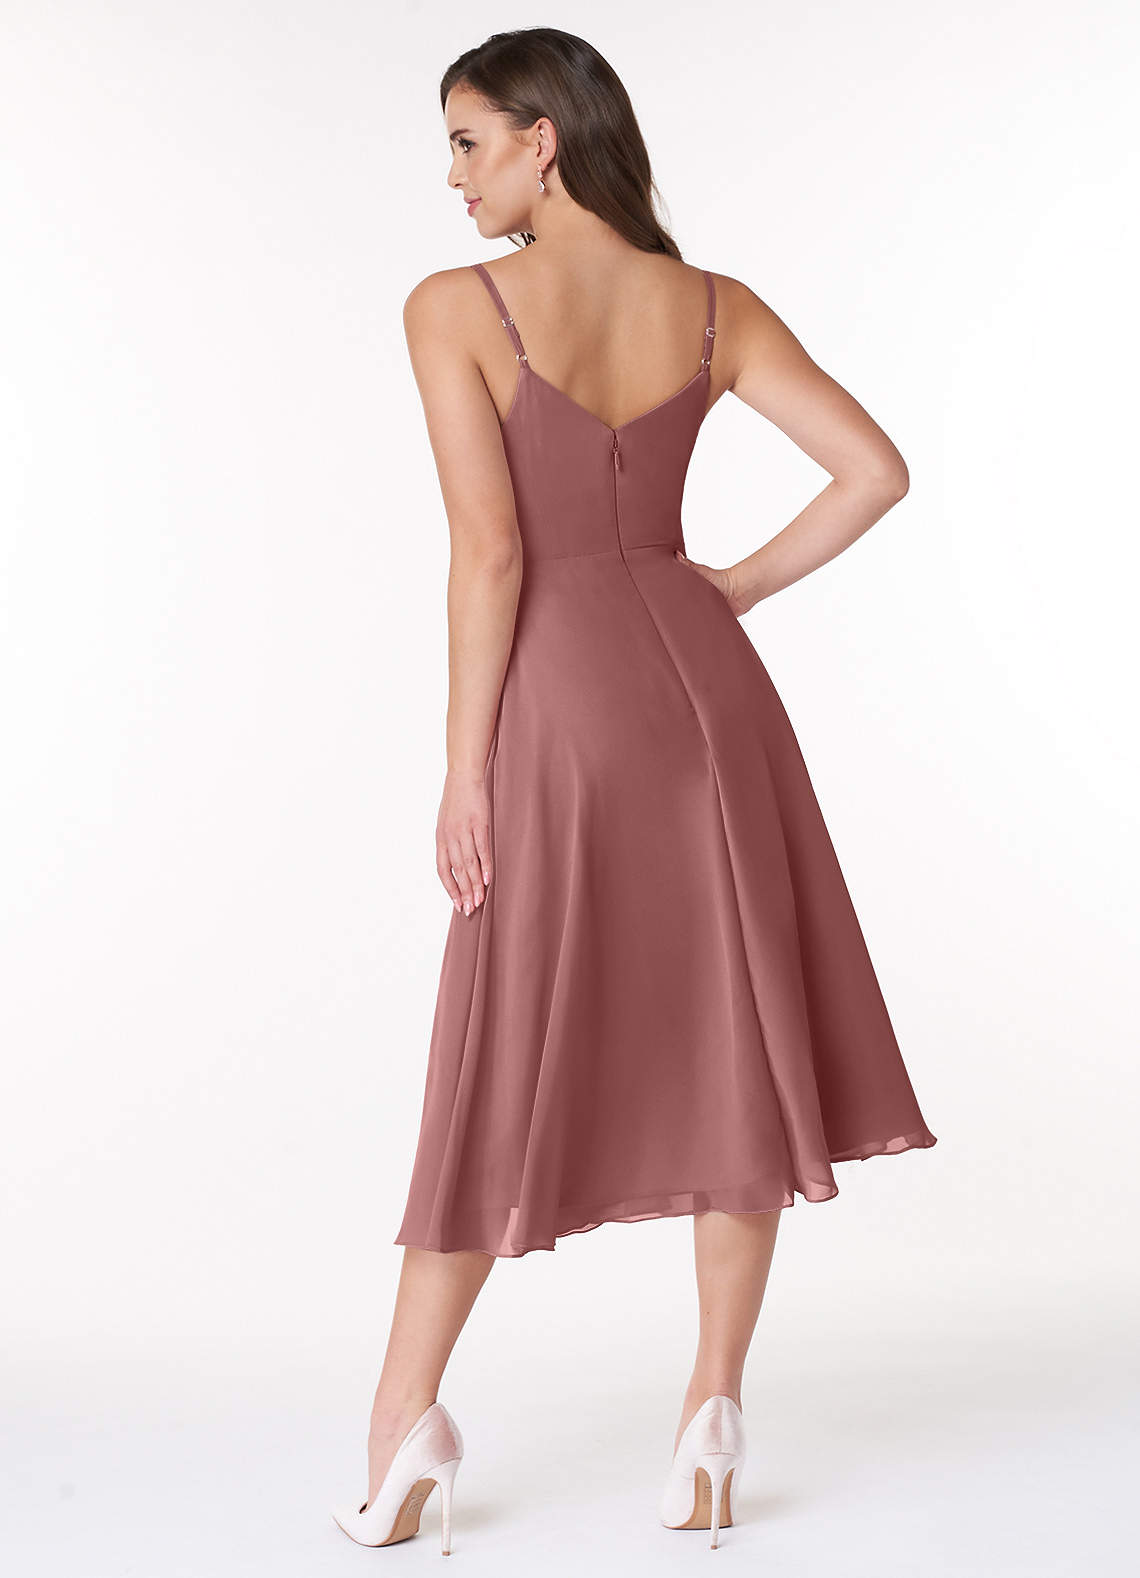 Azazie Clarissa Bridesmaid Dresses A-Line V-Neck Chiffon Tea-Length Dress image1